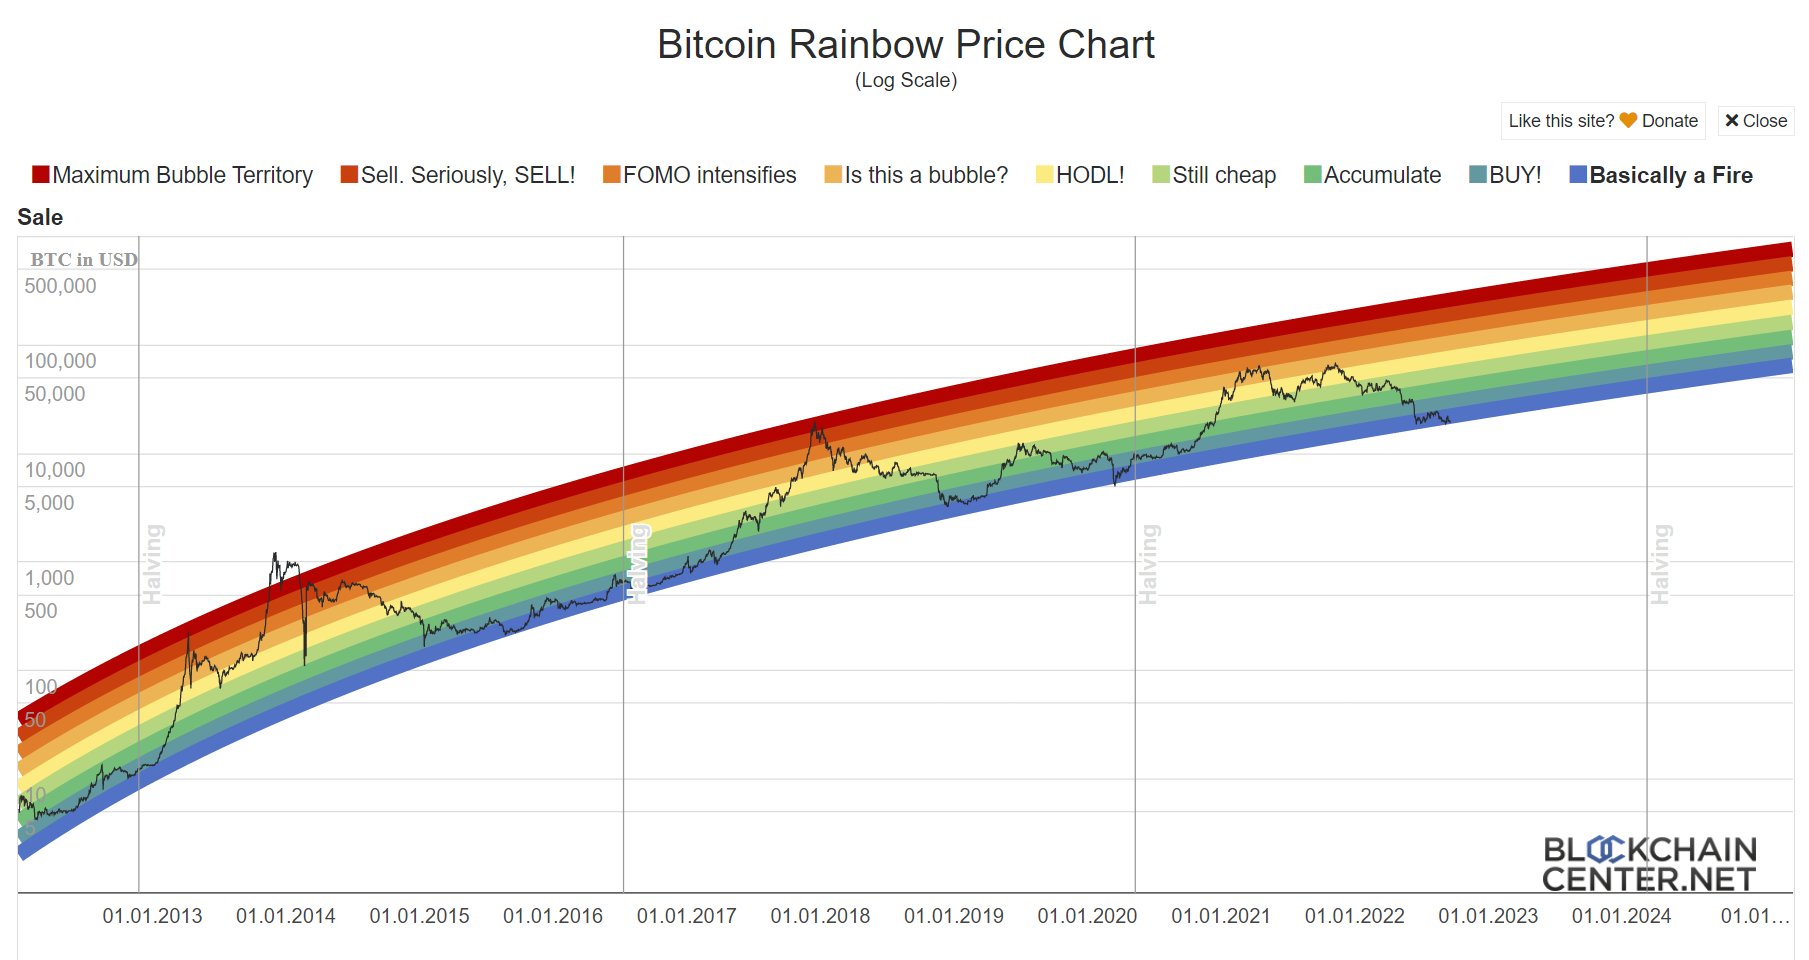 btc price peak